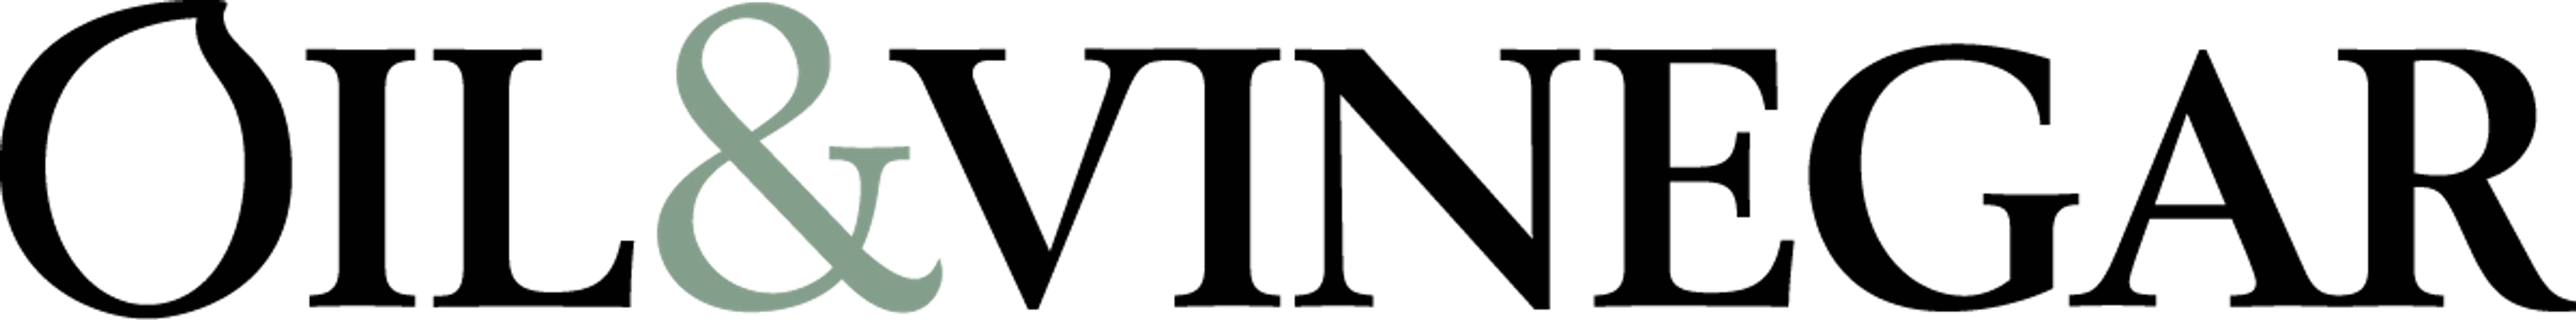 OIL & VINEGAR logo